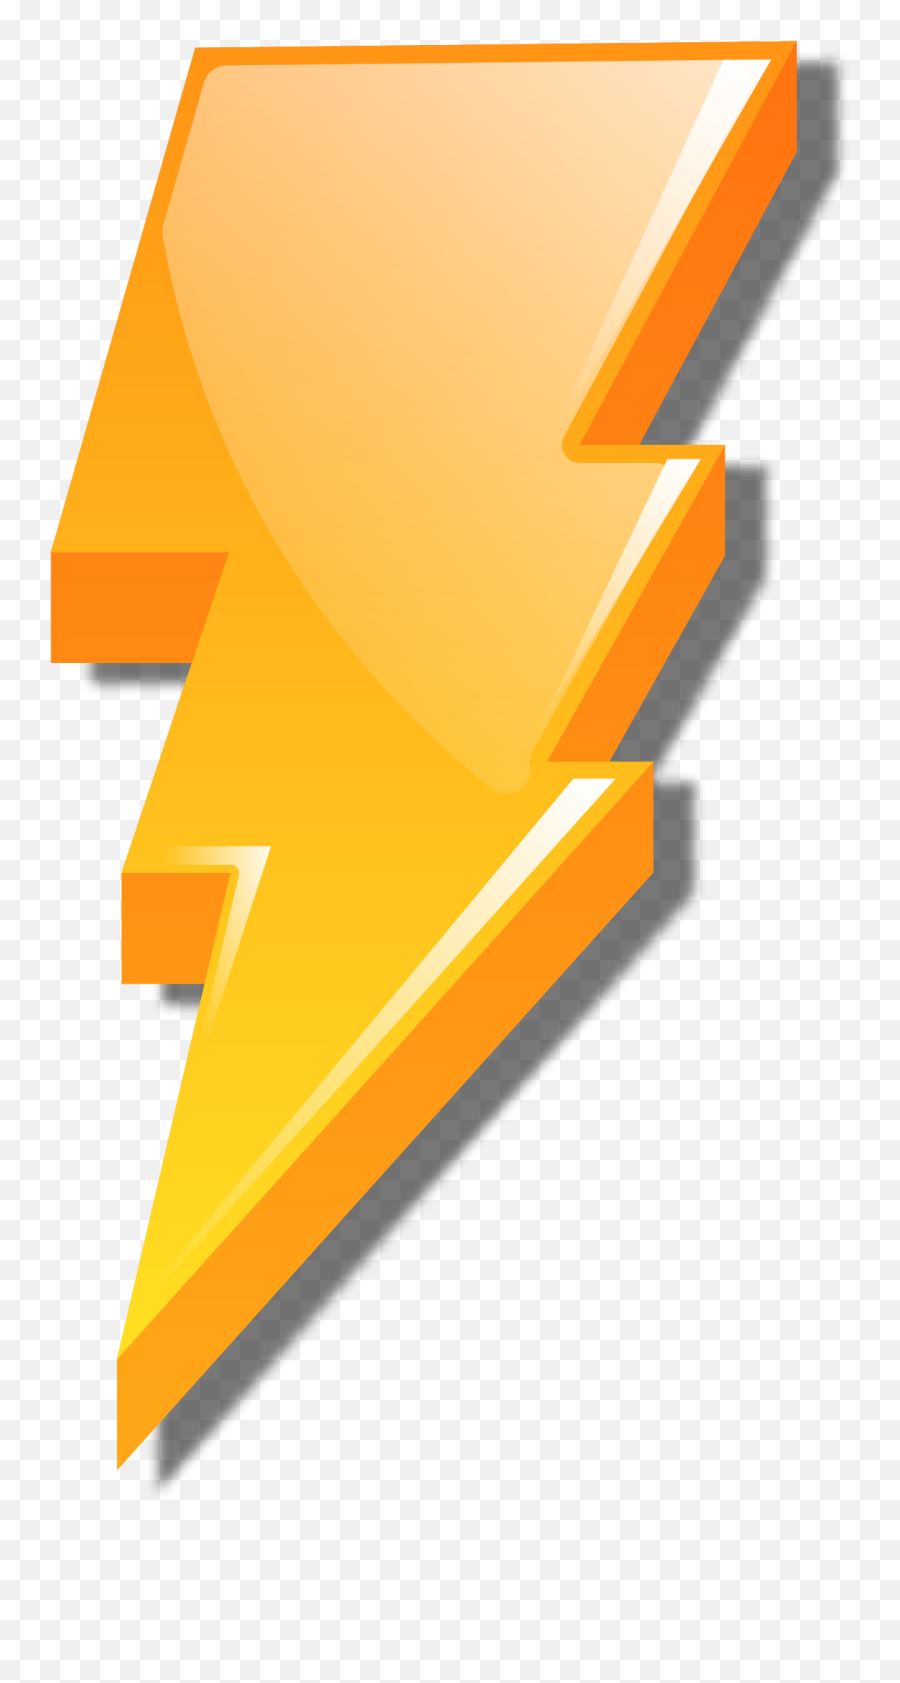 Download Hd Open - Power Rangers Lightning Bolt Transparent Lightning Bolt Power Rangers Logo Png,Lightning Bolt Transparent Background